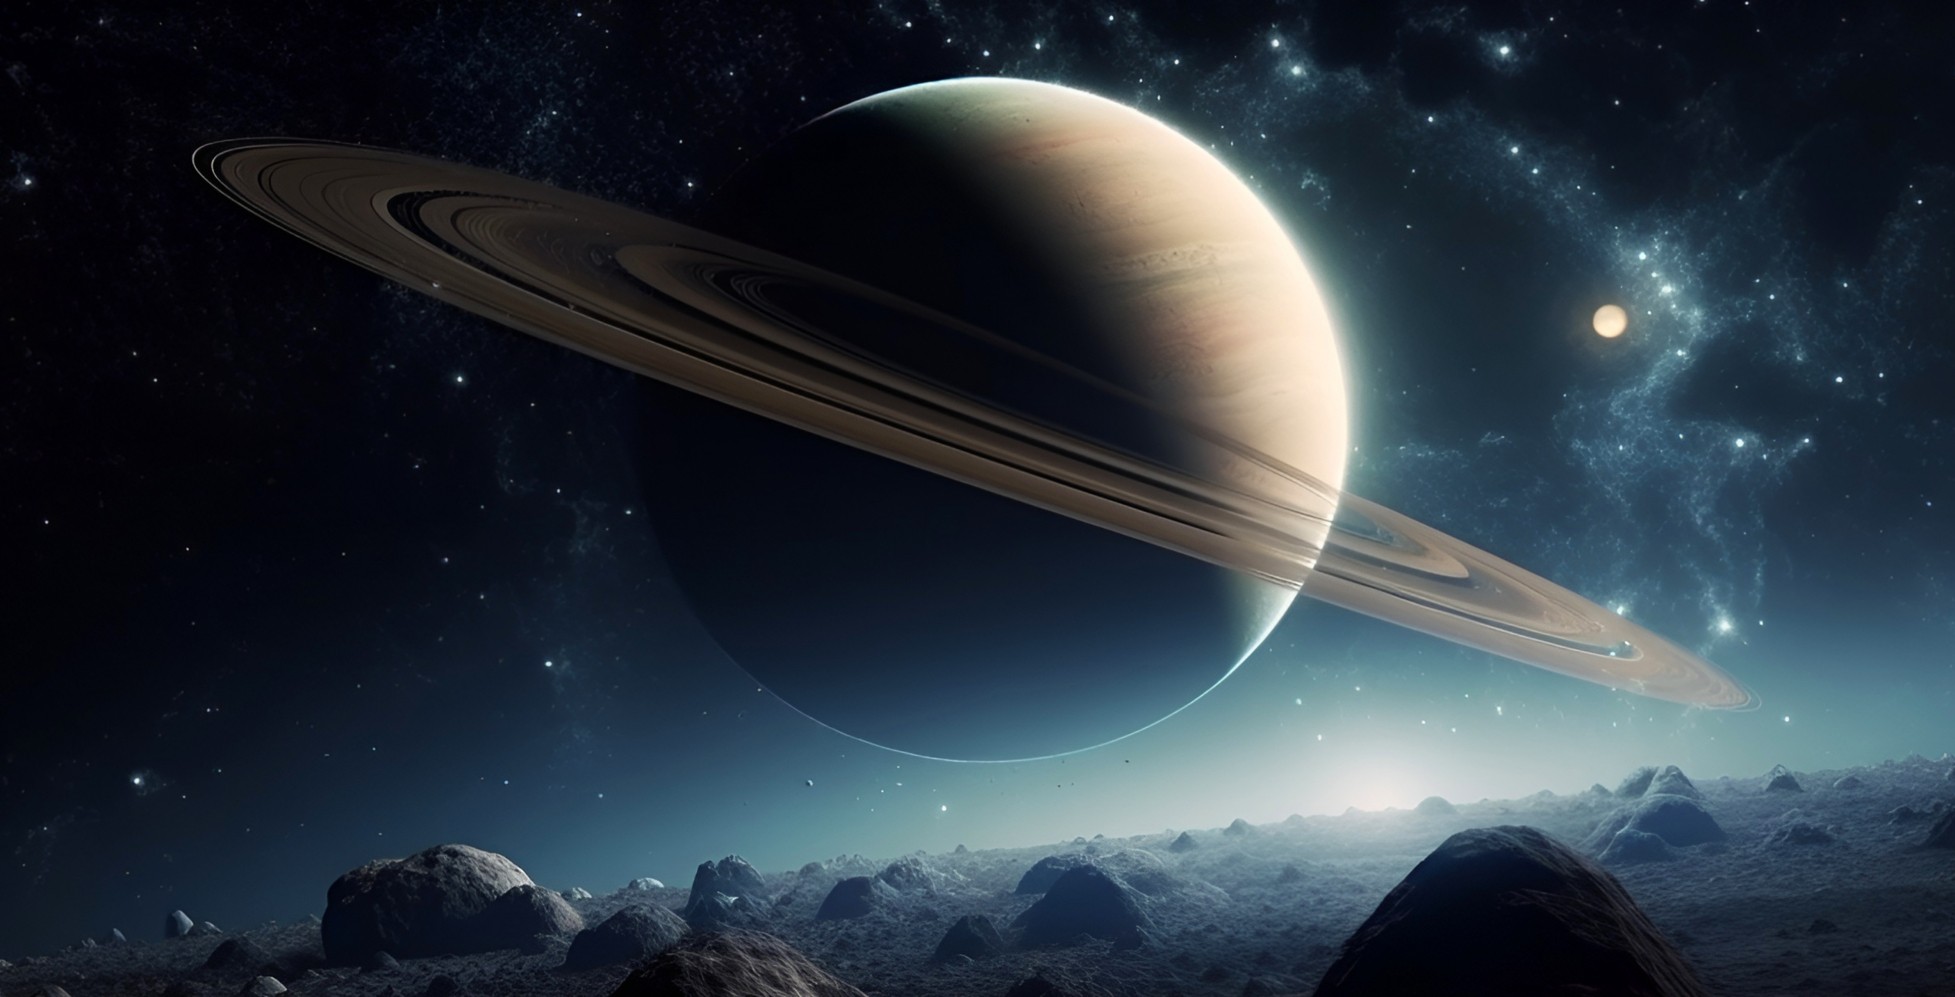 Průzkum Titanu: Je na největším měsíci Saturnu život? 2